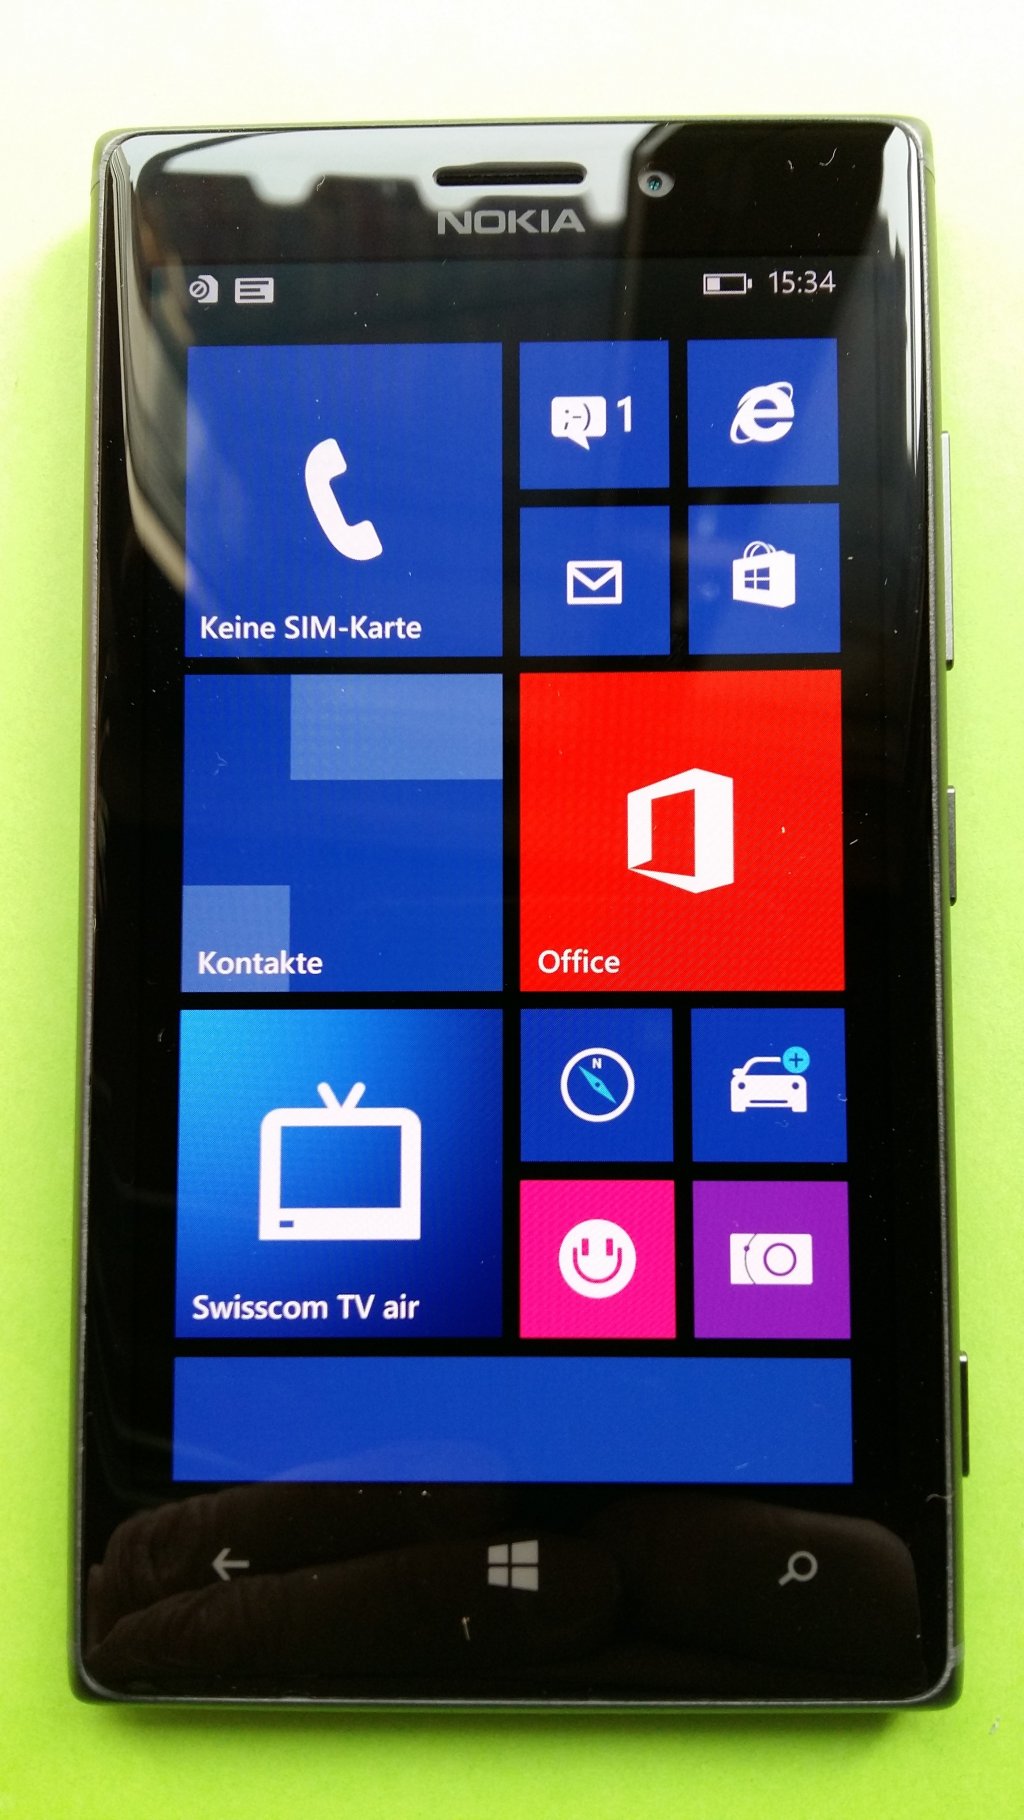 image-8050909-Nokia_925.1_Lumia_(1)1.w640.jpg